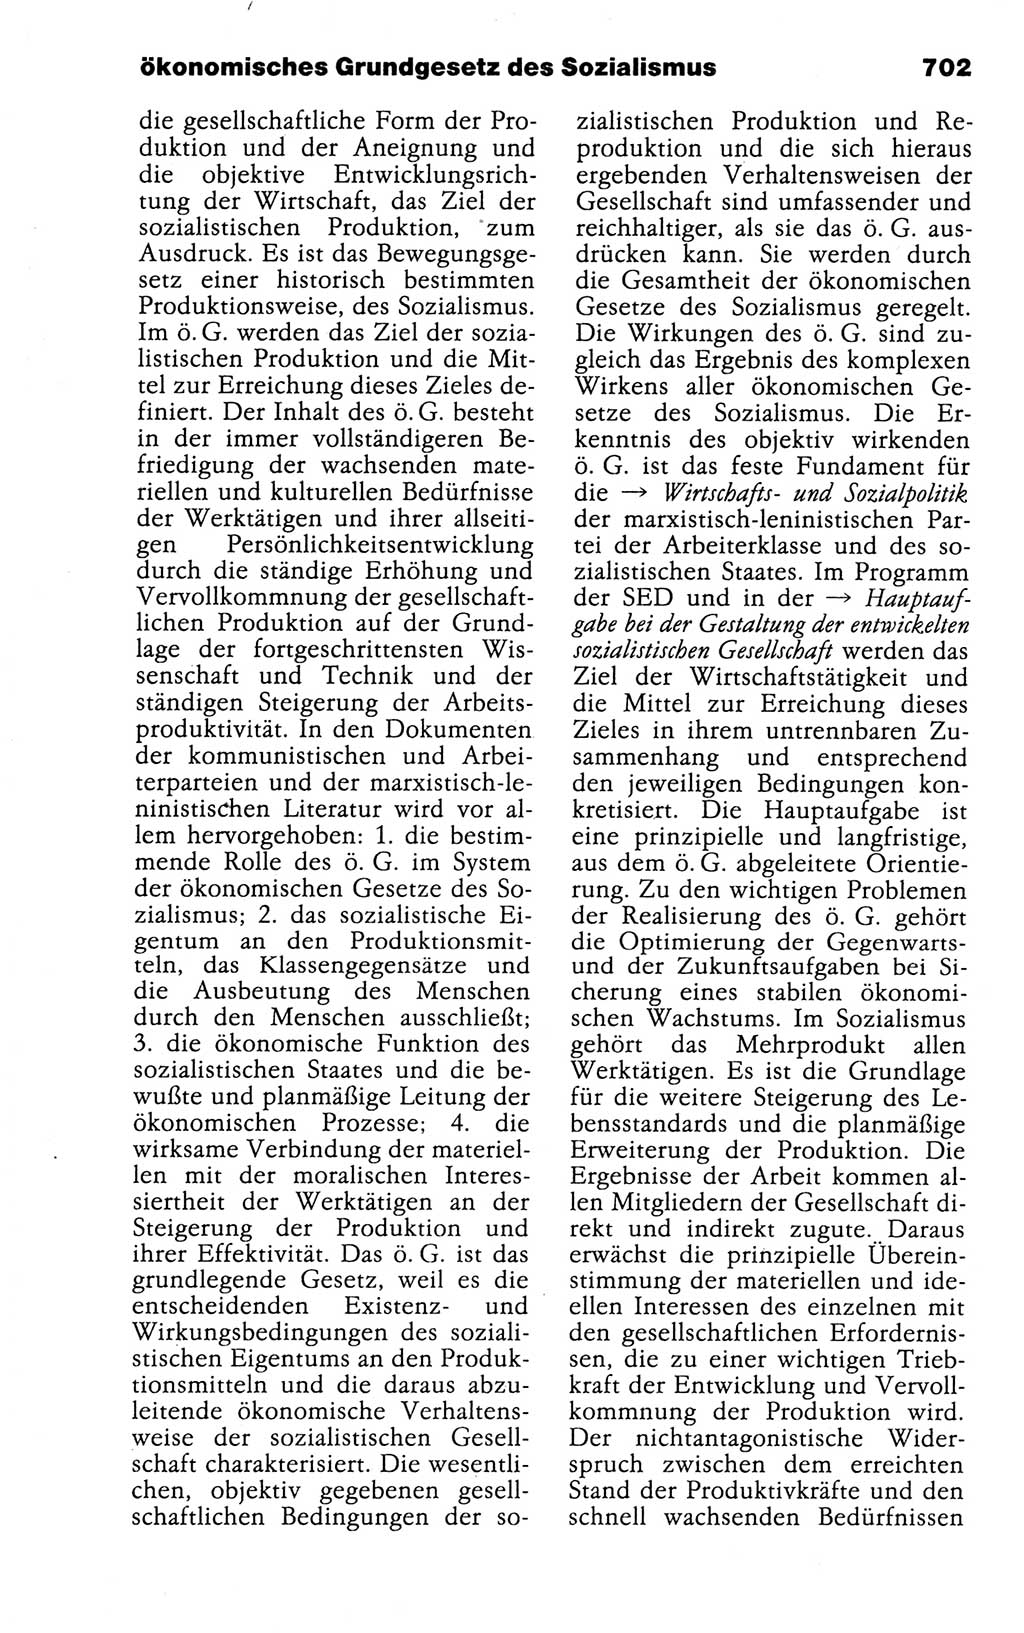 Kleines politisches Wörterbuch [Deutsche Demokratische Republik (DDR)] 1988, Seite 702 (Kl. pol. Wb. DDR 1988, S. 702)